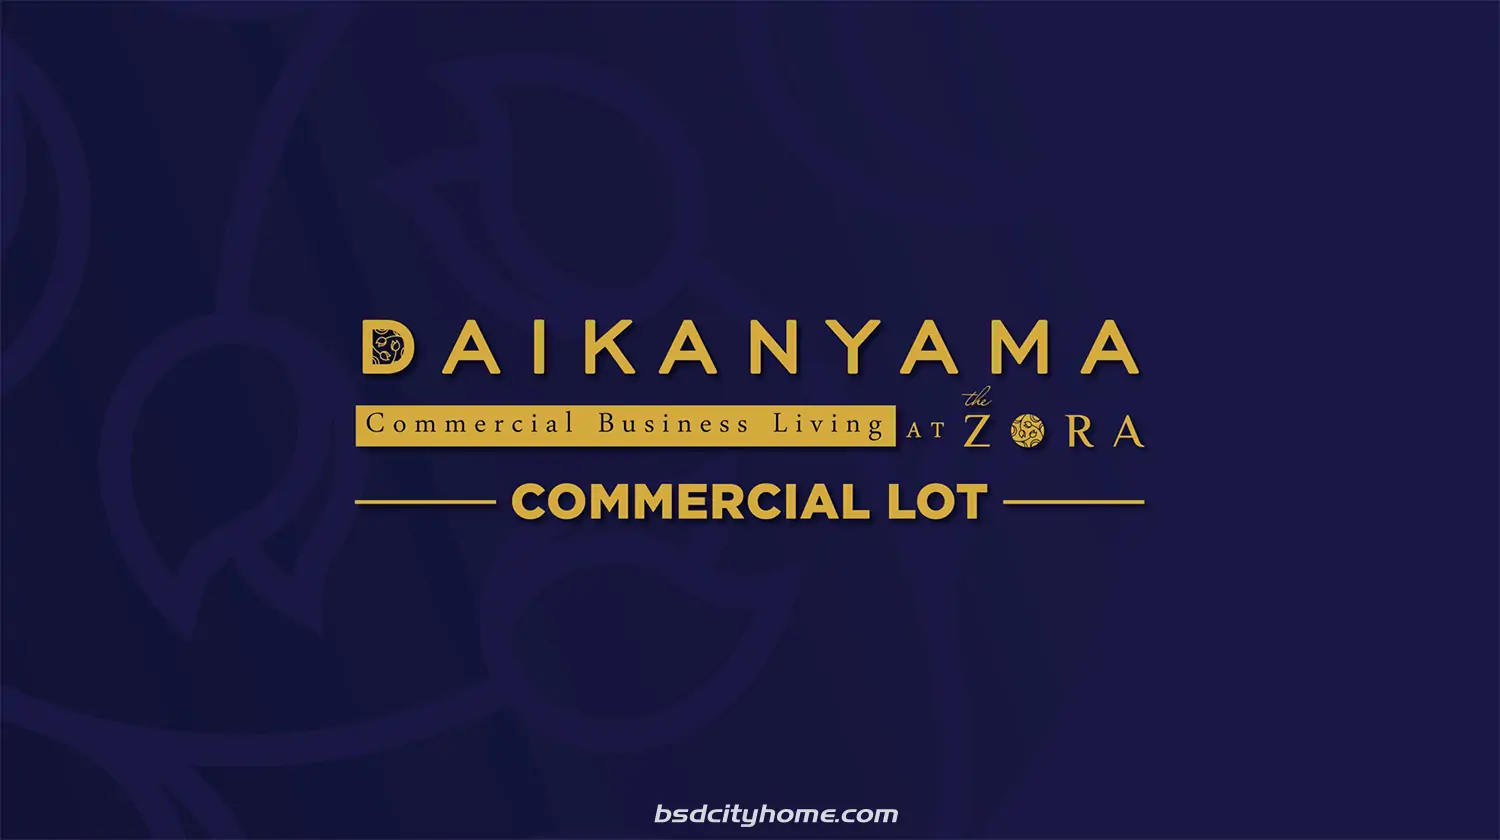 Daikanyama at Zora Commercial Lot